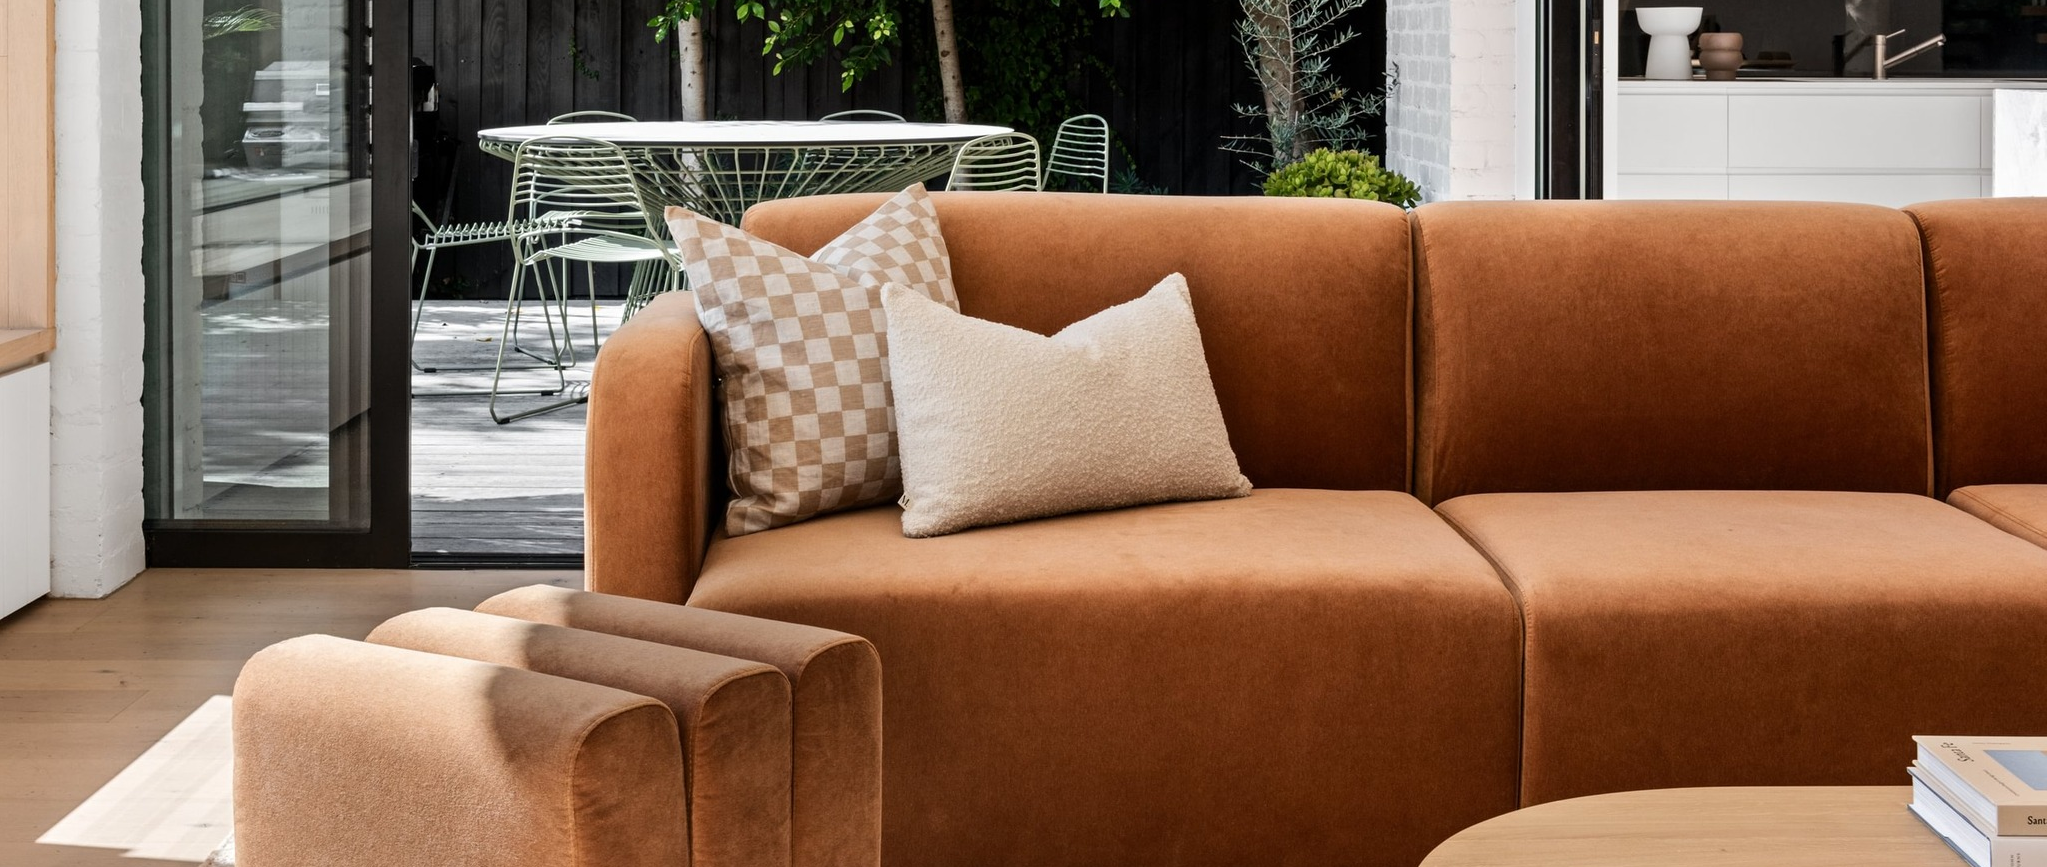 Up to 60% OFF Designer furniture sale at RJ Living